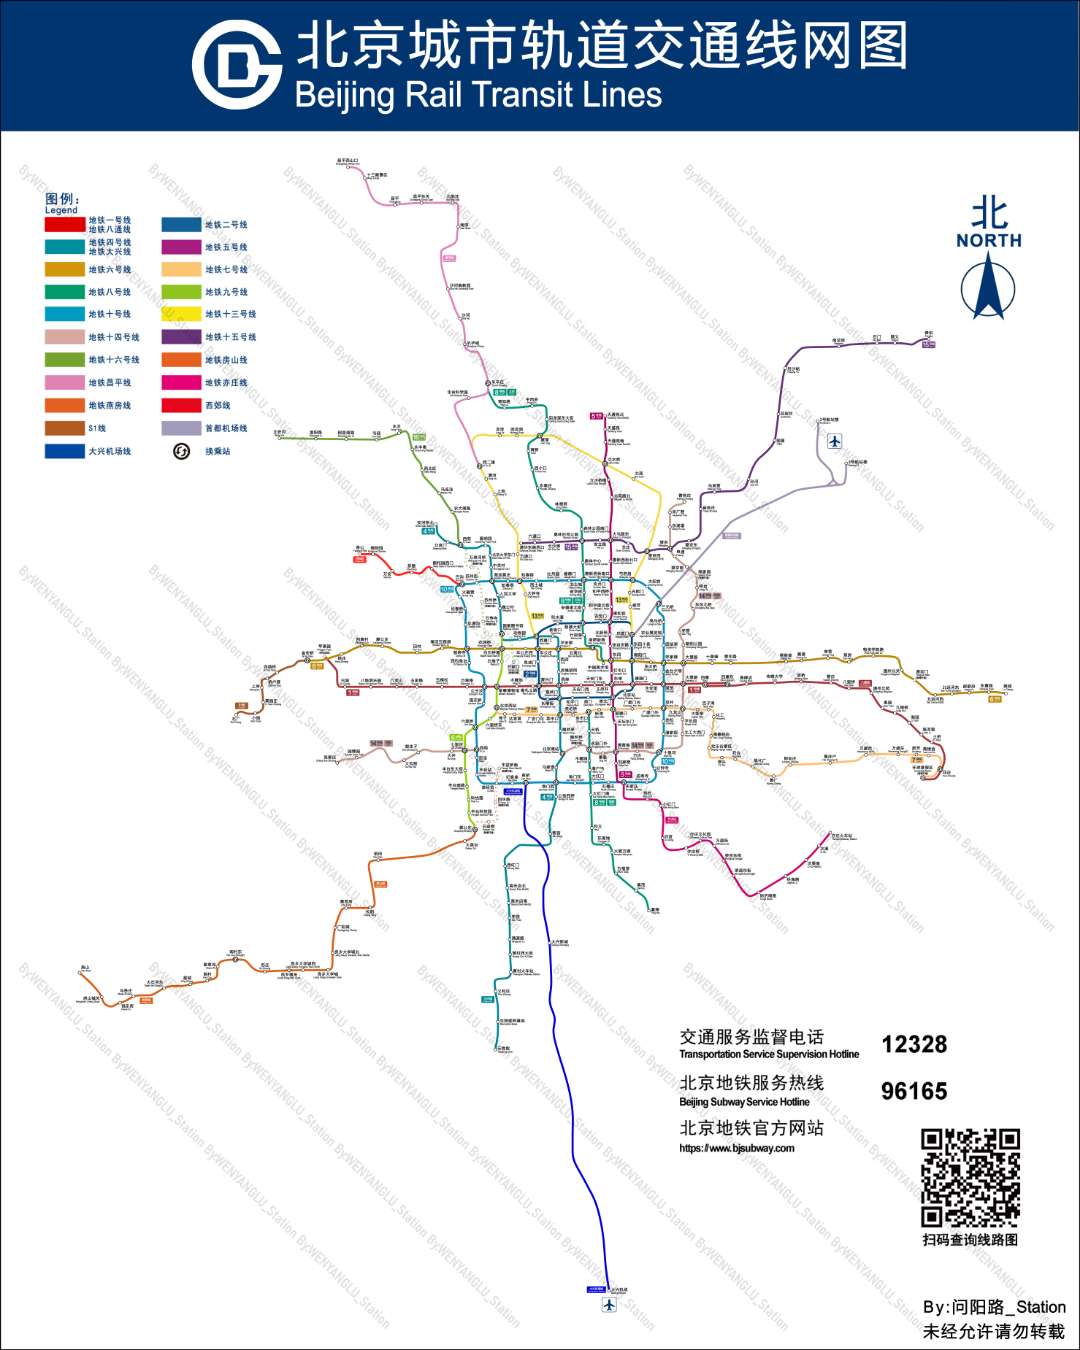 增加了今年计划开通的线路(虚线) 北京市域铁路线网图 虚线代表今年